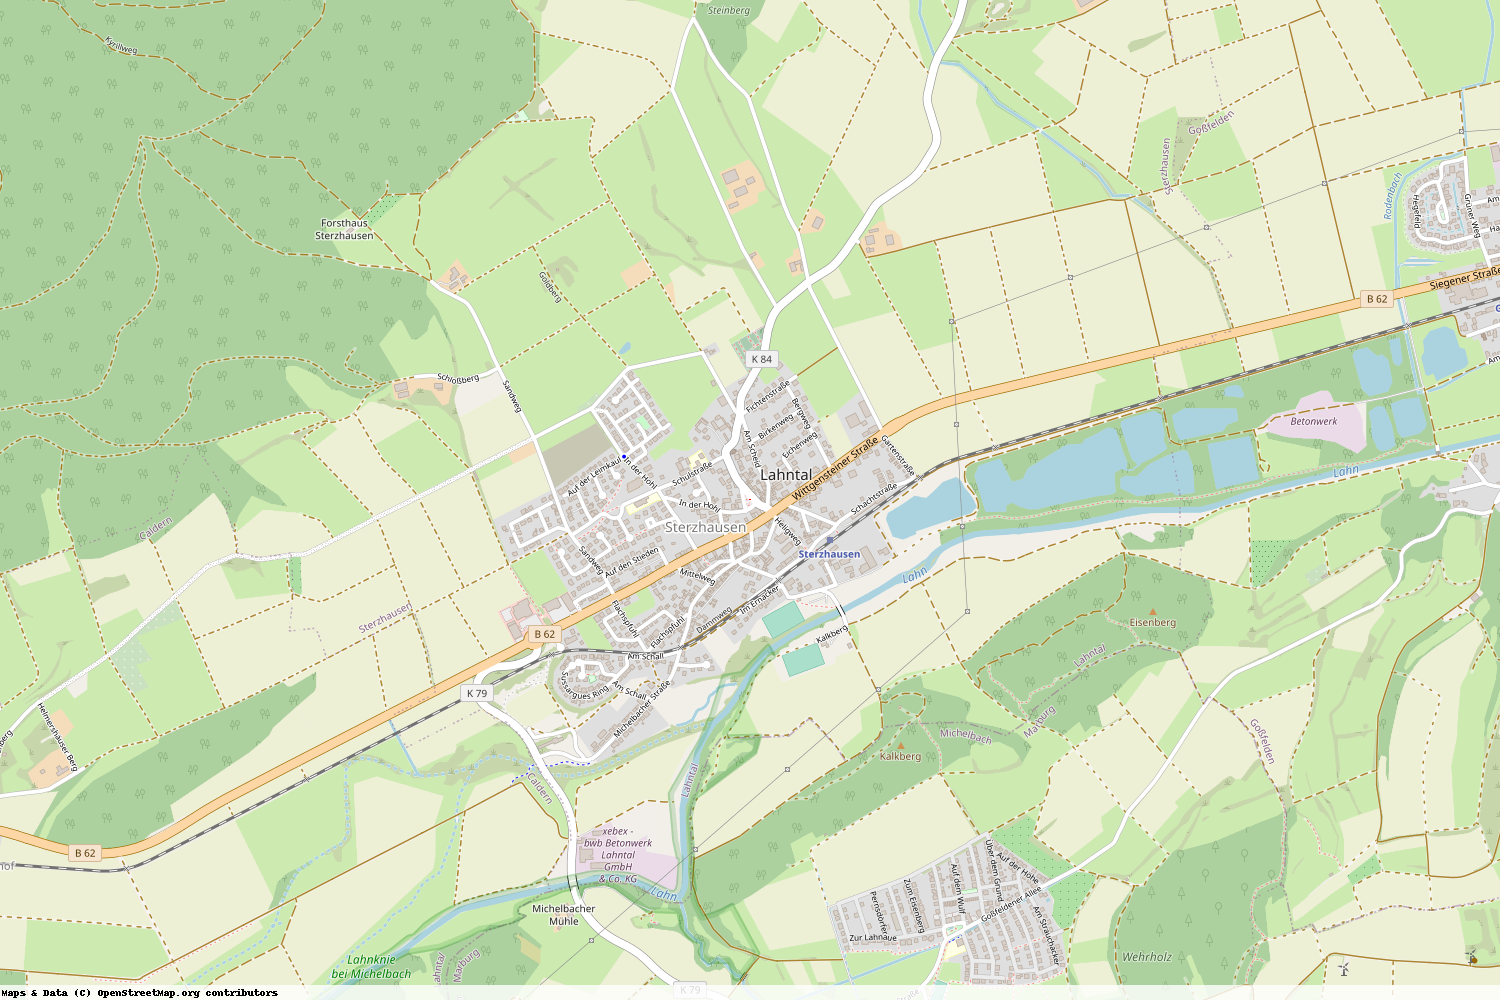 Ist gerade Stromausfall in Hessen - Marburg-Biedenkopf - Lahntal?